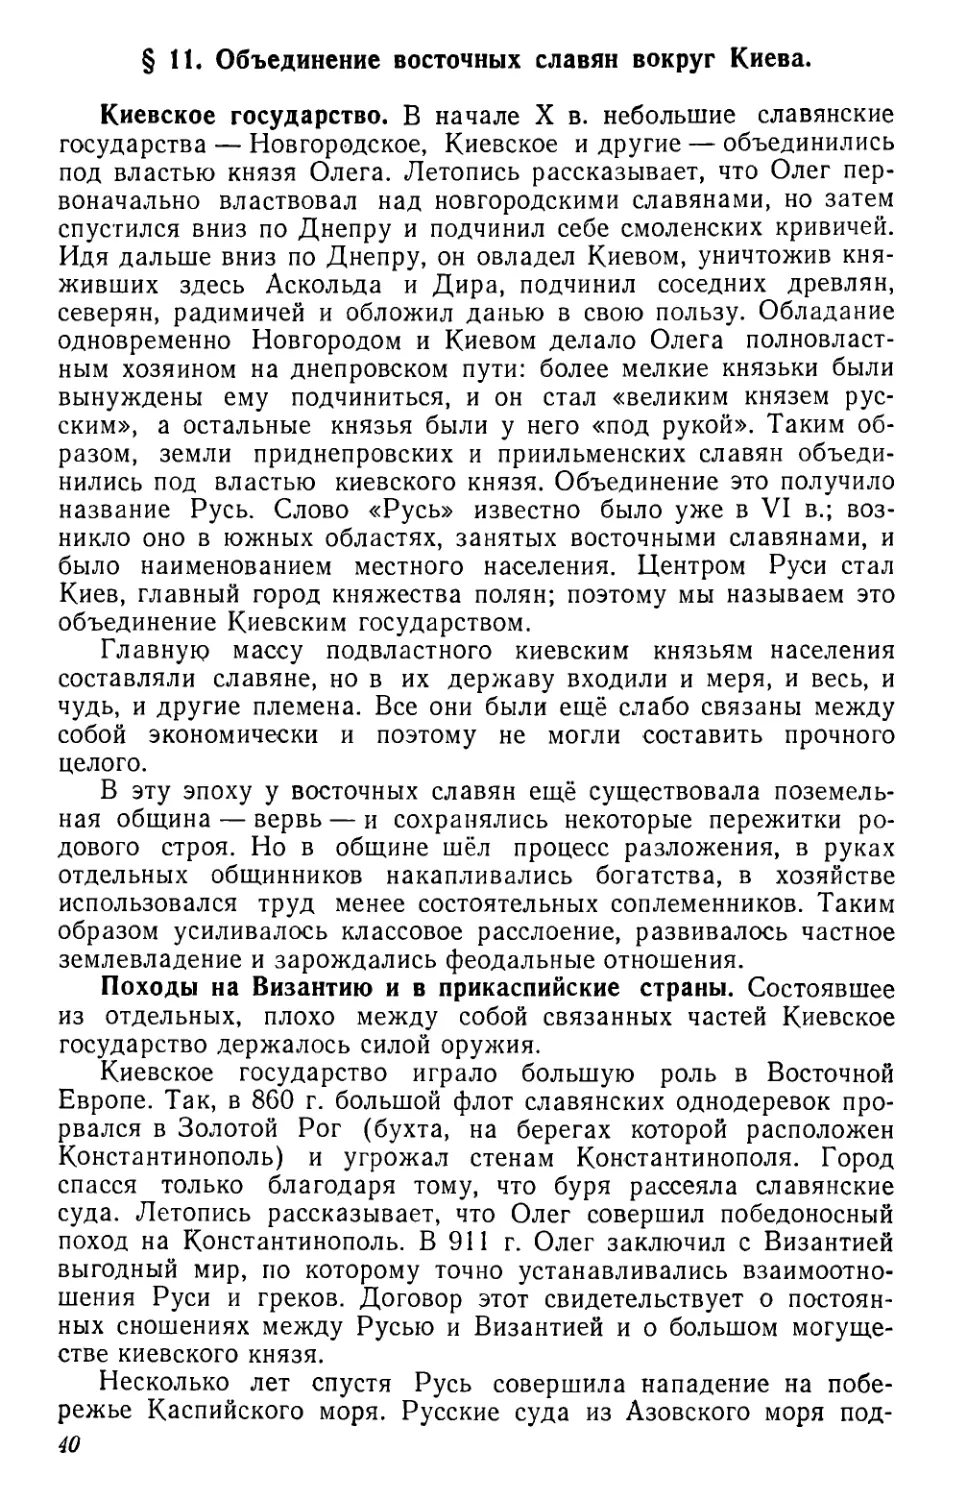 § 11. Объединение восточных славян вокруг Киева